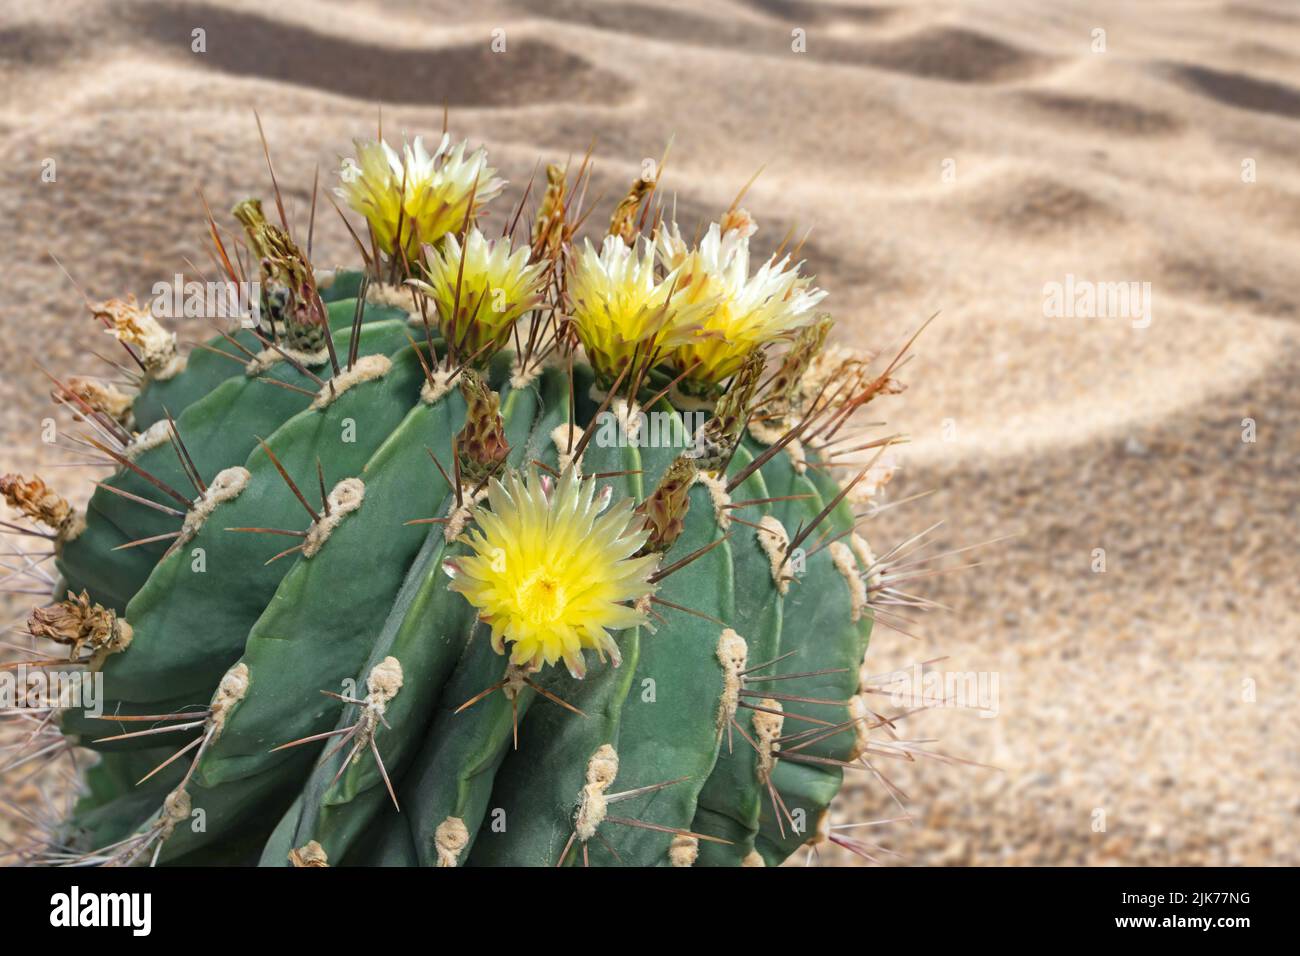 Cactus florece con flores amarillas en el desierto de arena. Planta suculenta globular decorativa. Foto de stock